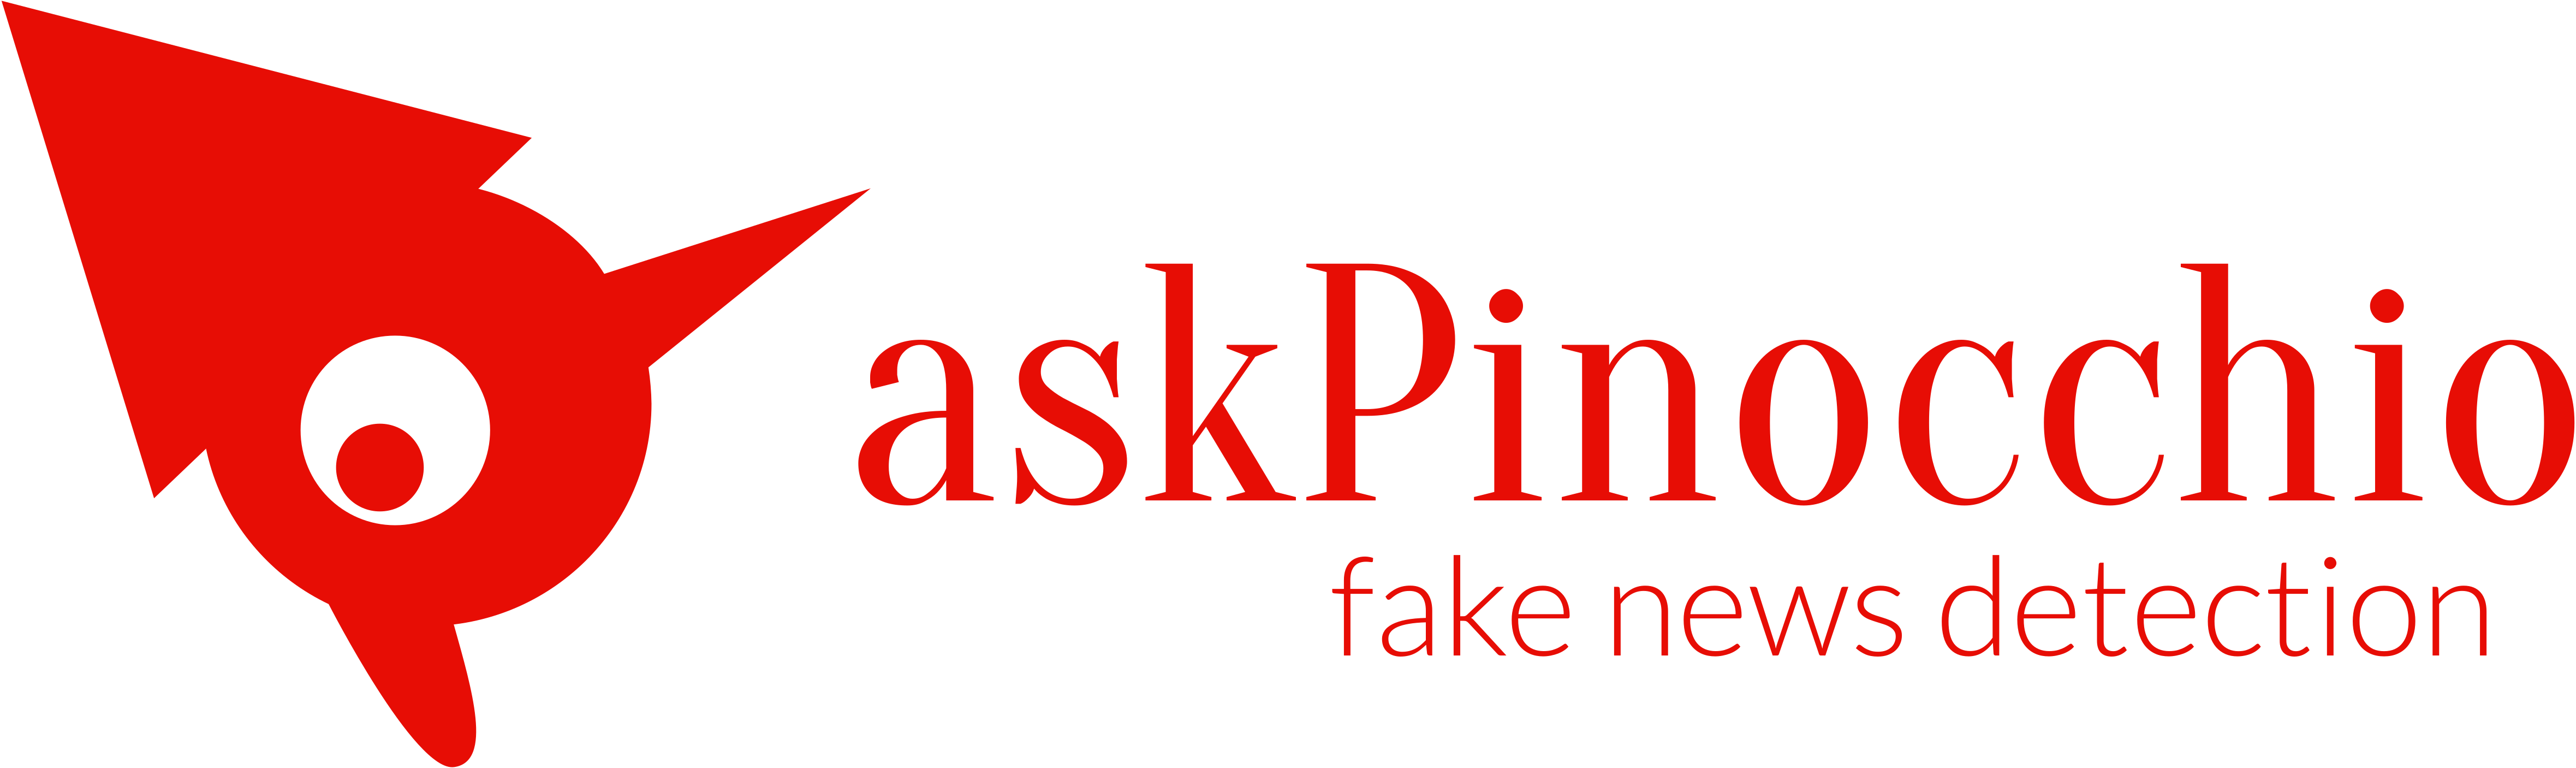 askPinocchio logo